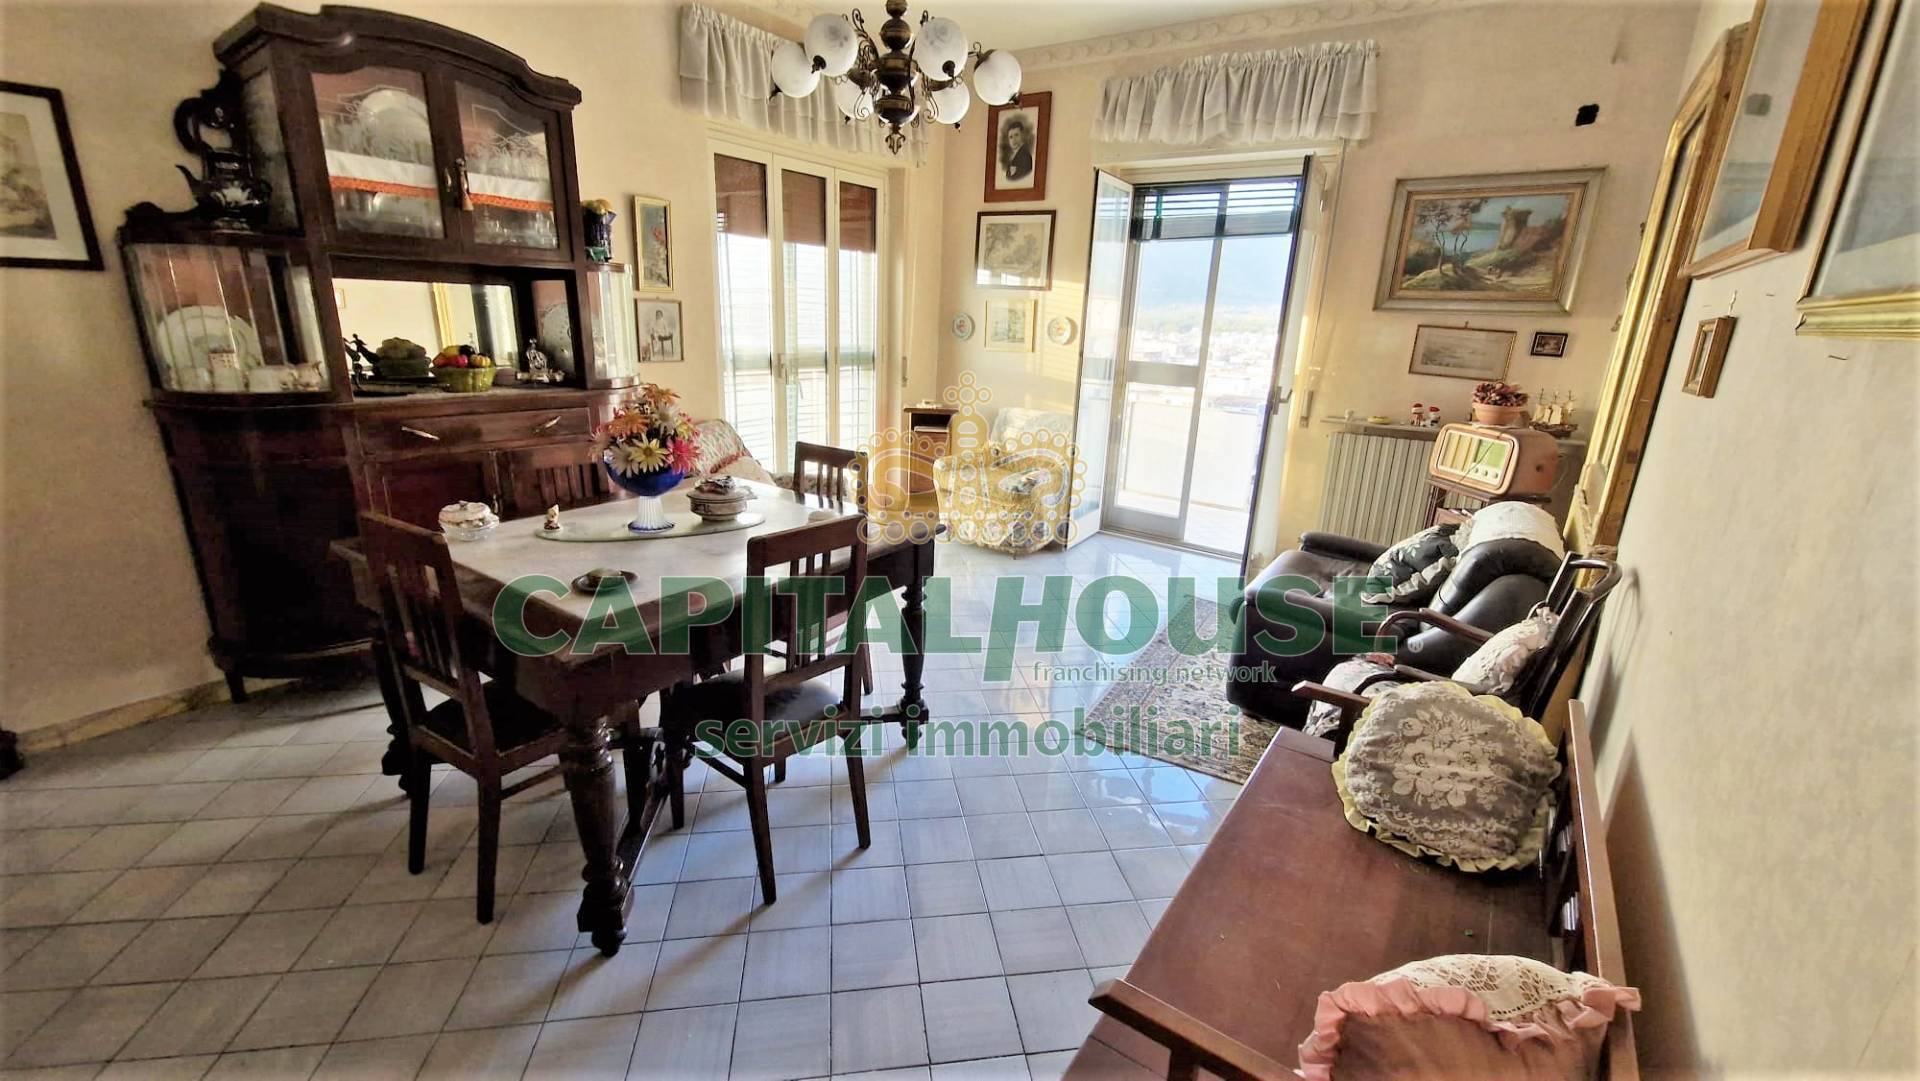 Appartamento in vendita a Cicciano, 4 locali, prezzo € 80.000 | CambioCasa.it